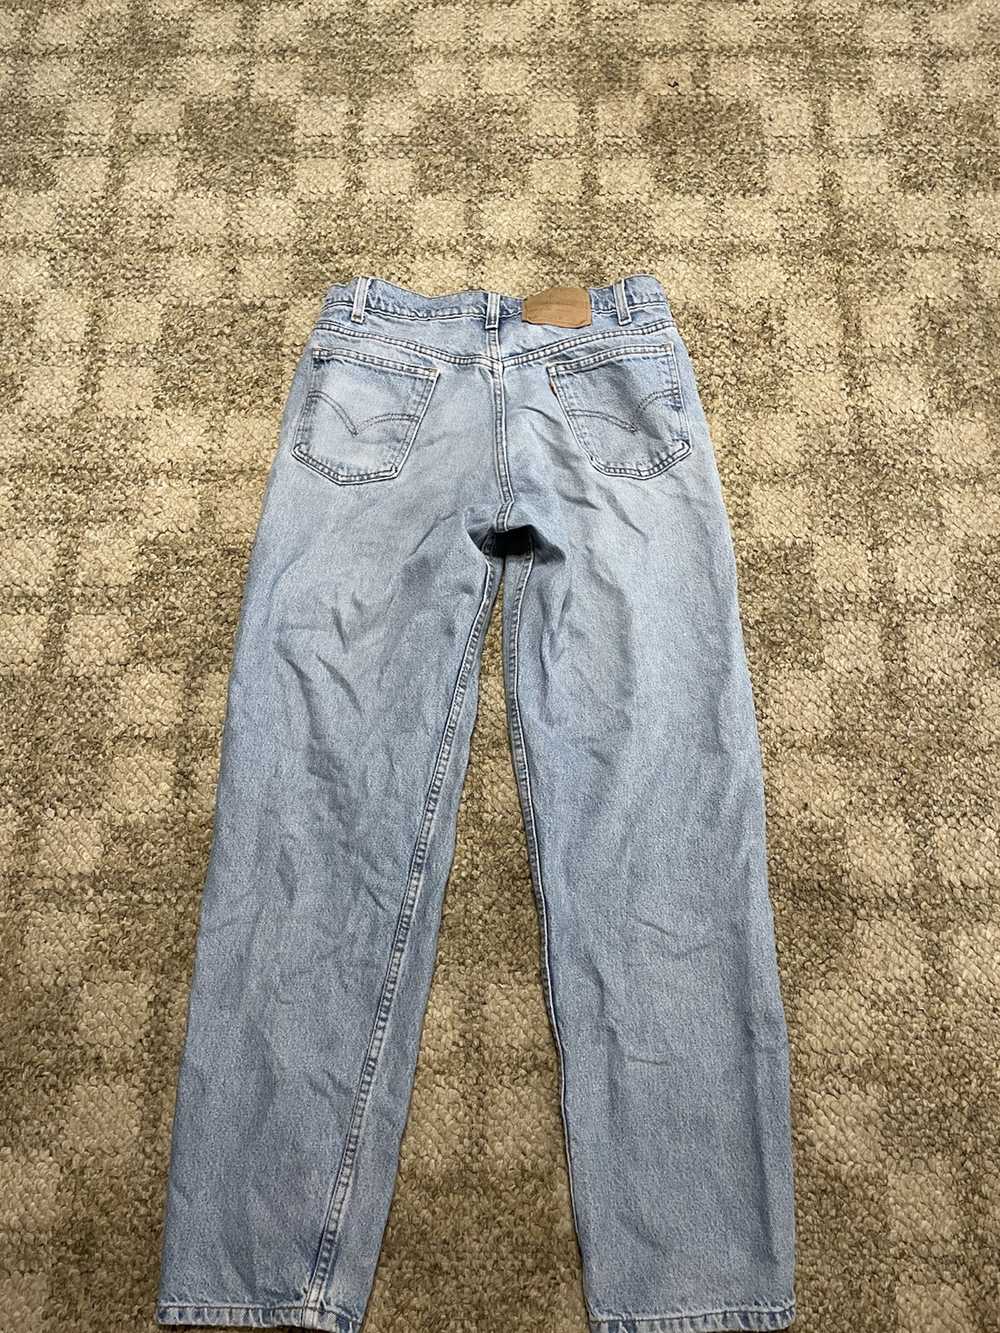 Levi's Blue jeans - image 2